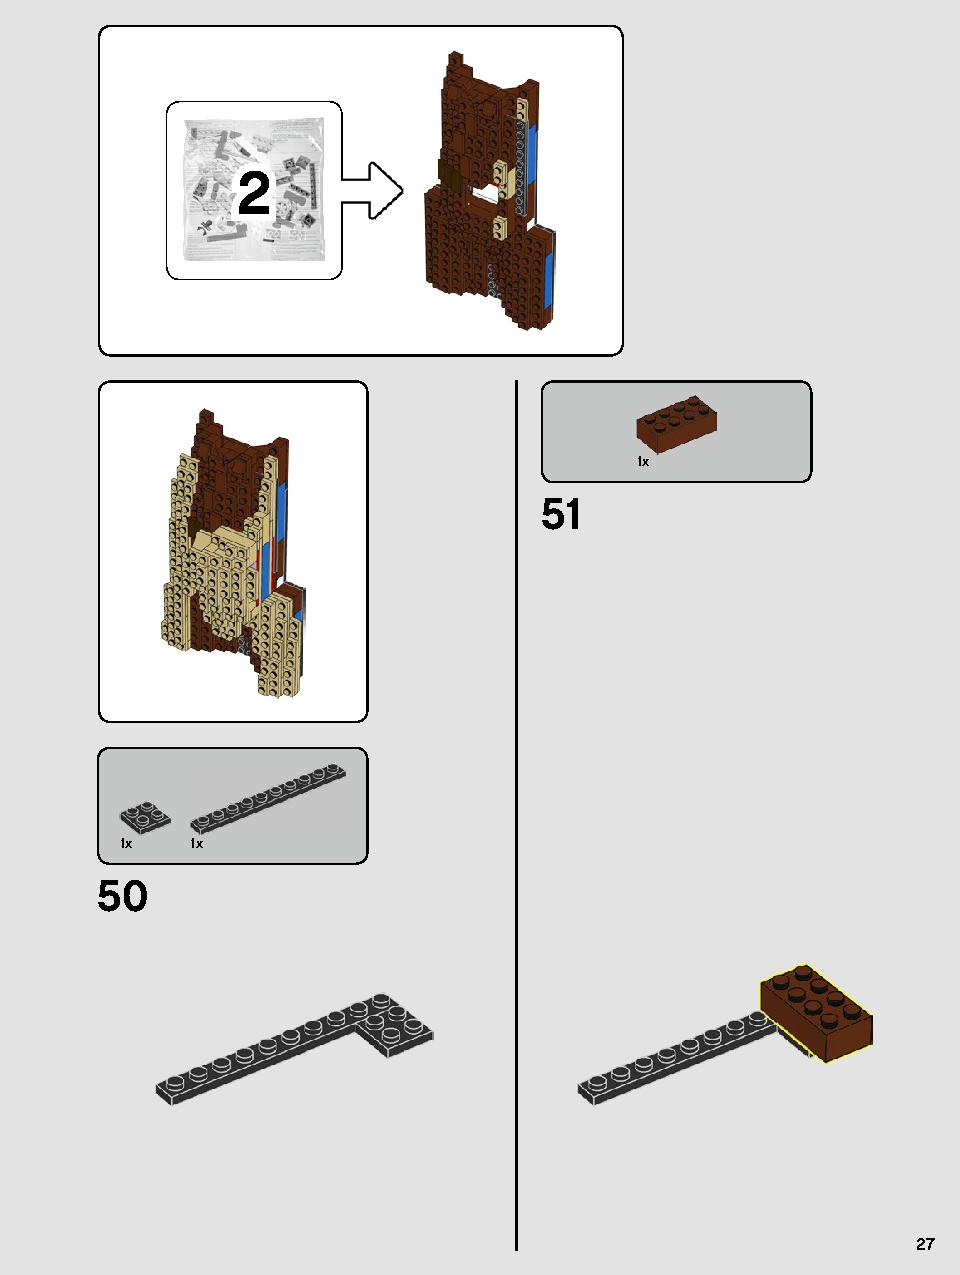 ヨーダ™ 75255 レゴの商品情報 レゴの説明書・組立方法 27 page